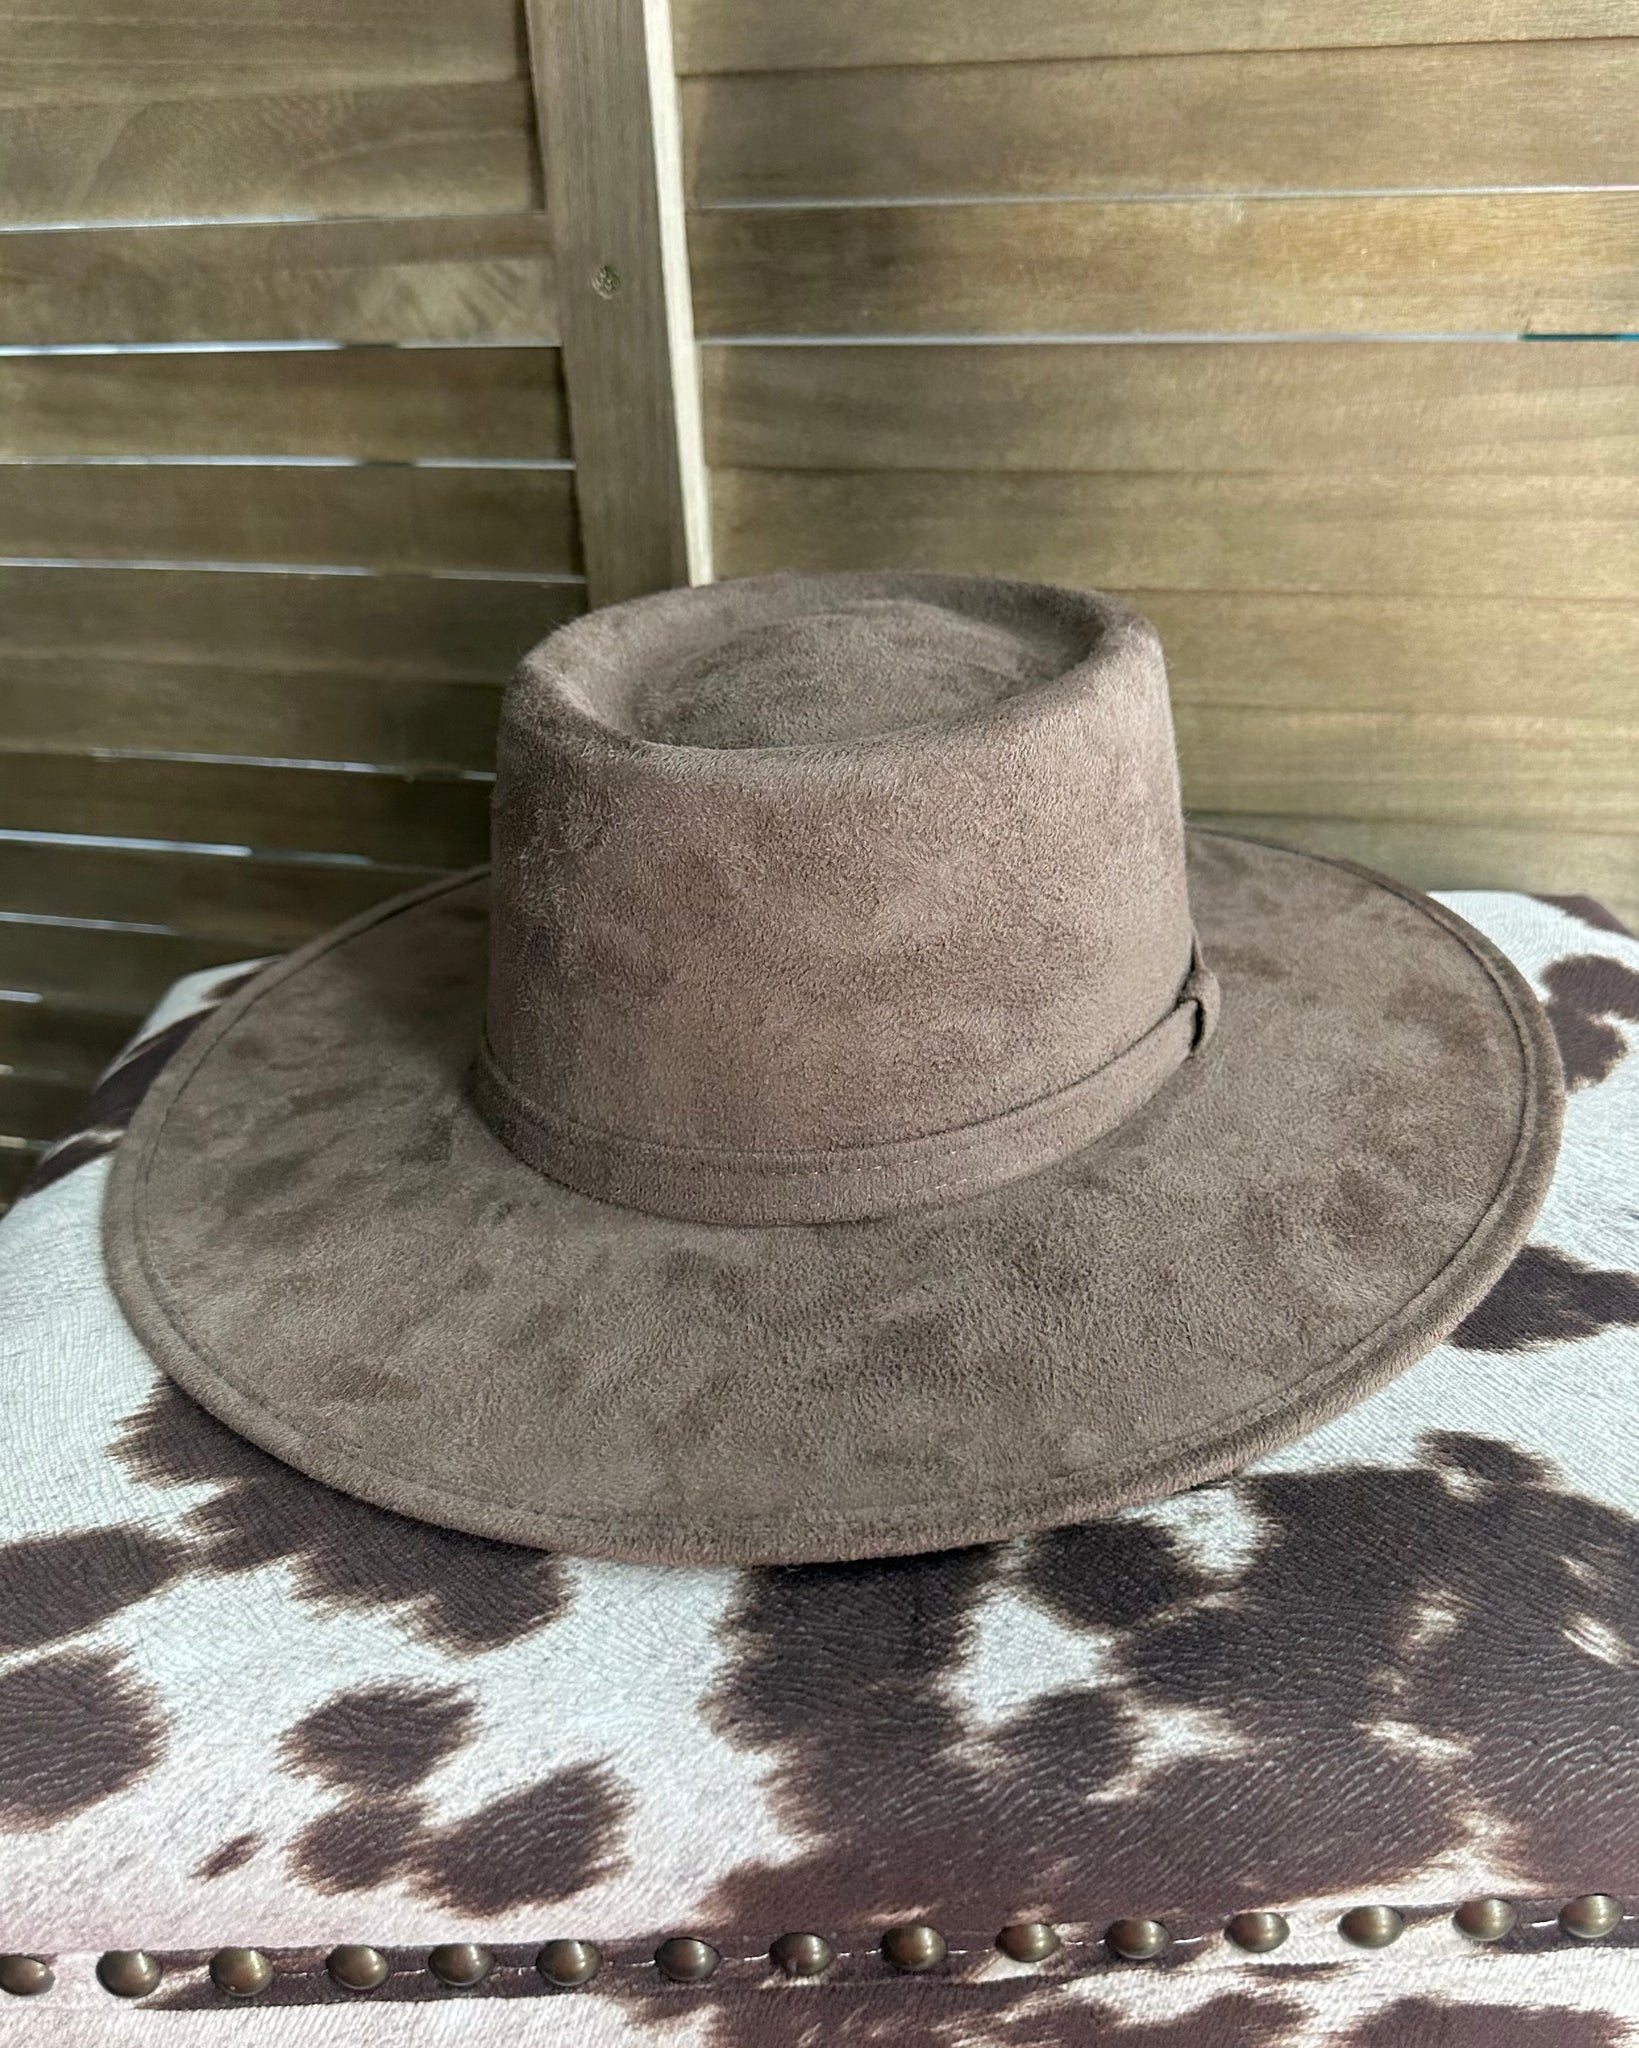 Brown Western Hat